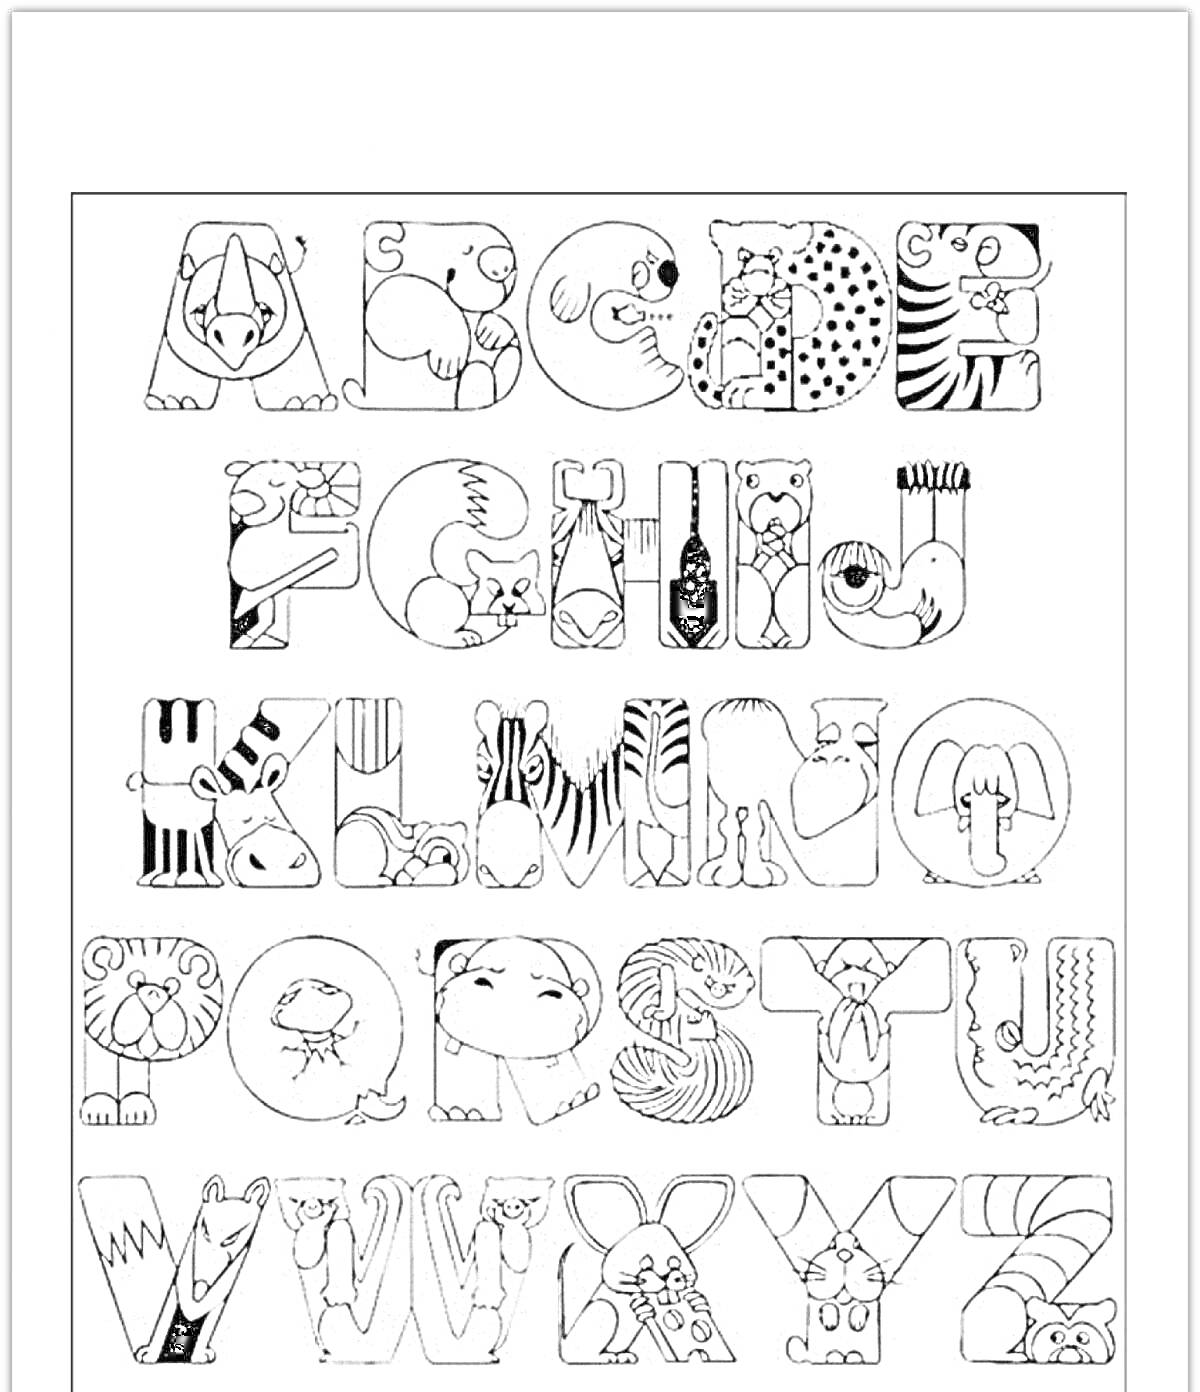 Раскраска Алфавит с животными; в каждой букве спрятано изображение животных - всё от аллигатора до зебра.